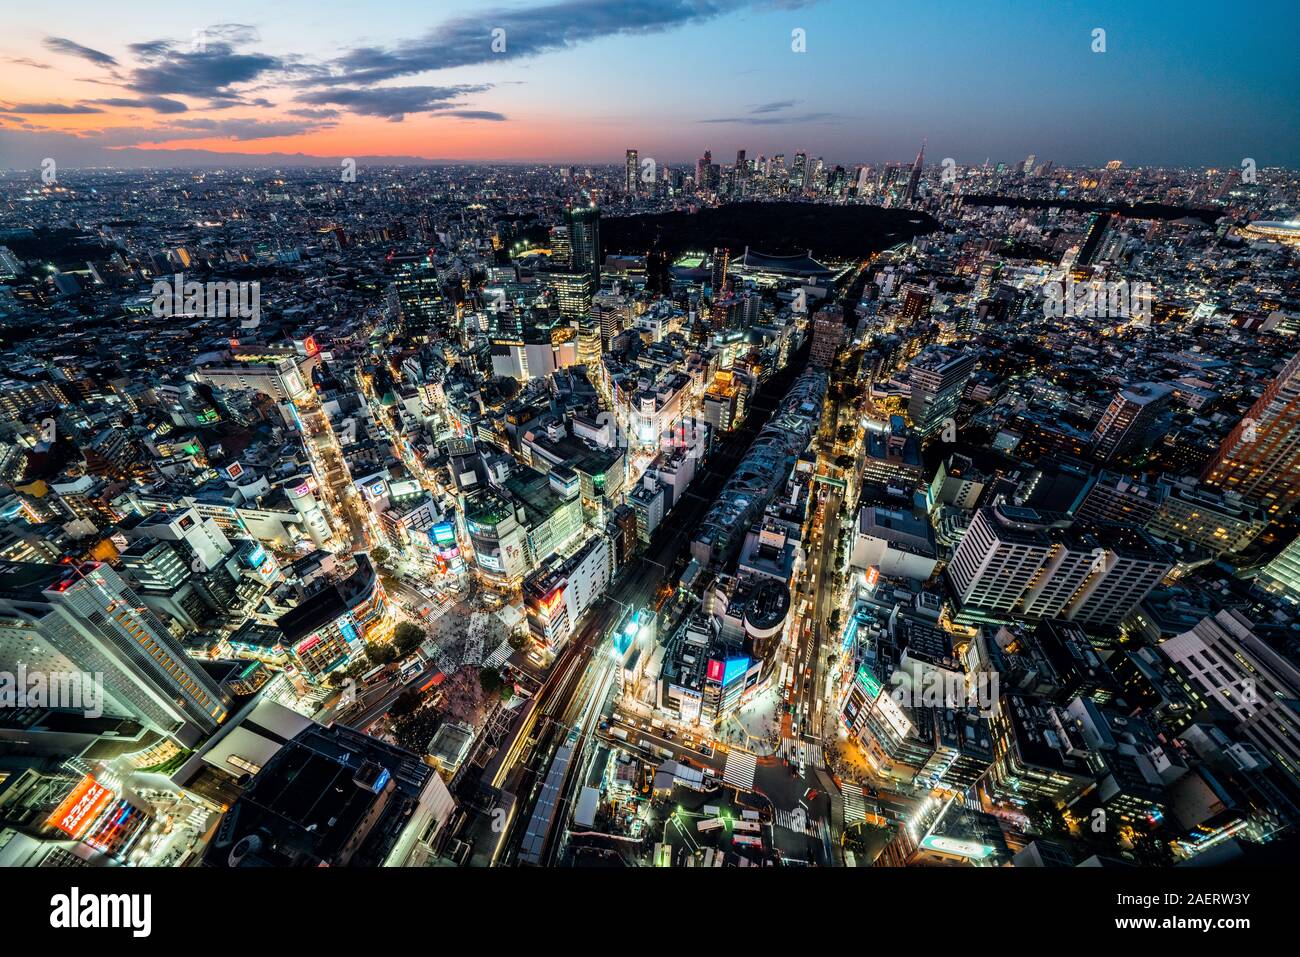 Tokyo, Giappone - 5 Nov 2019: Shibuya scramble cityscape di attraversamento del paesaggio, auto trasporti traffico e affollate di persone a piedi. Elevato angolo di visione Foto Stock